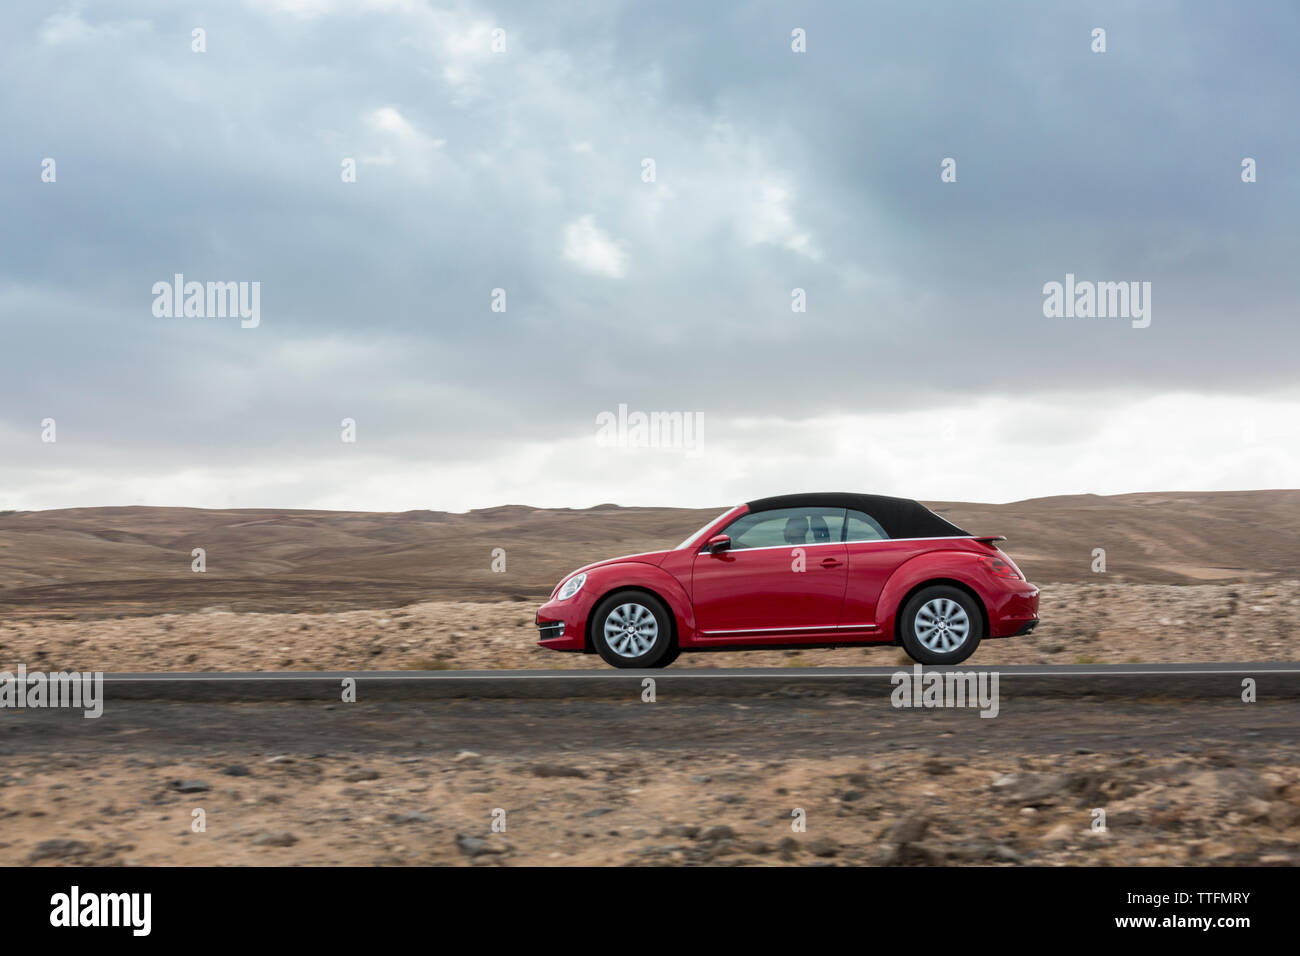 Red car guida nella vuota strada lastricata in un deserto paesaggio vulcanico Foto Stock